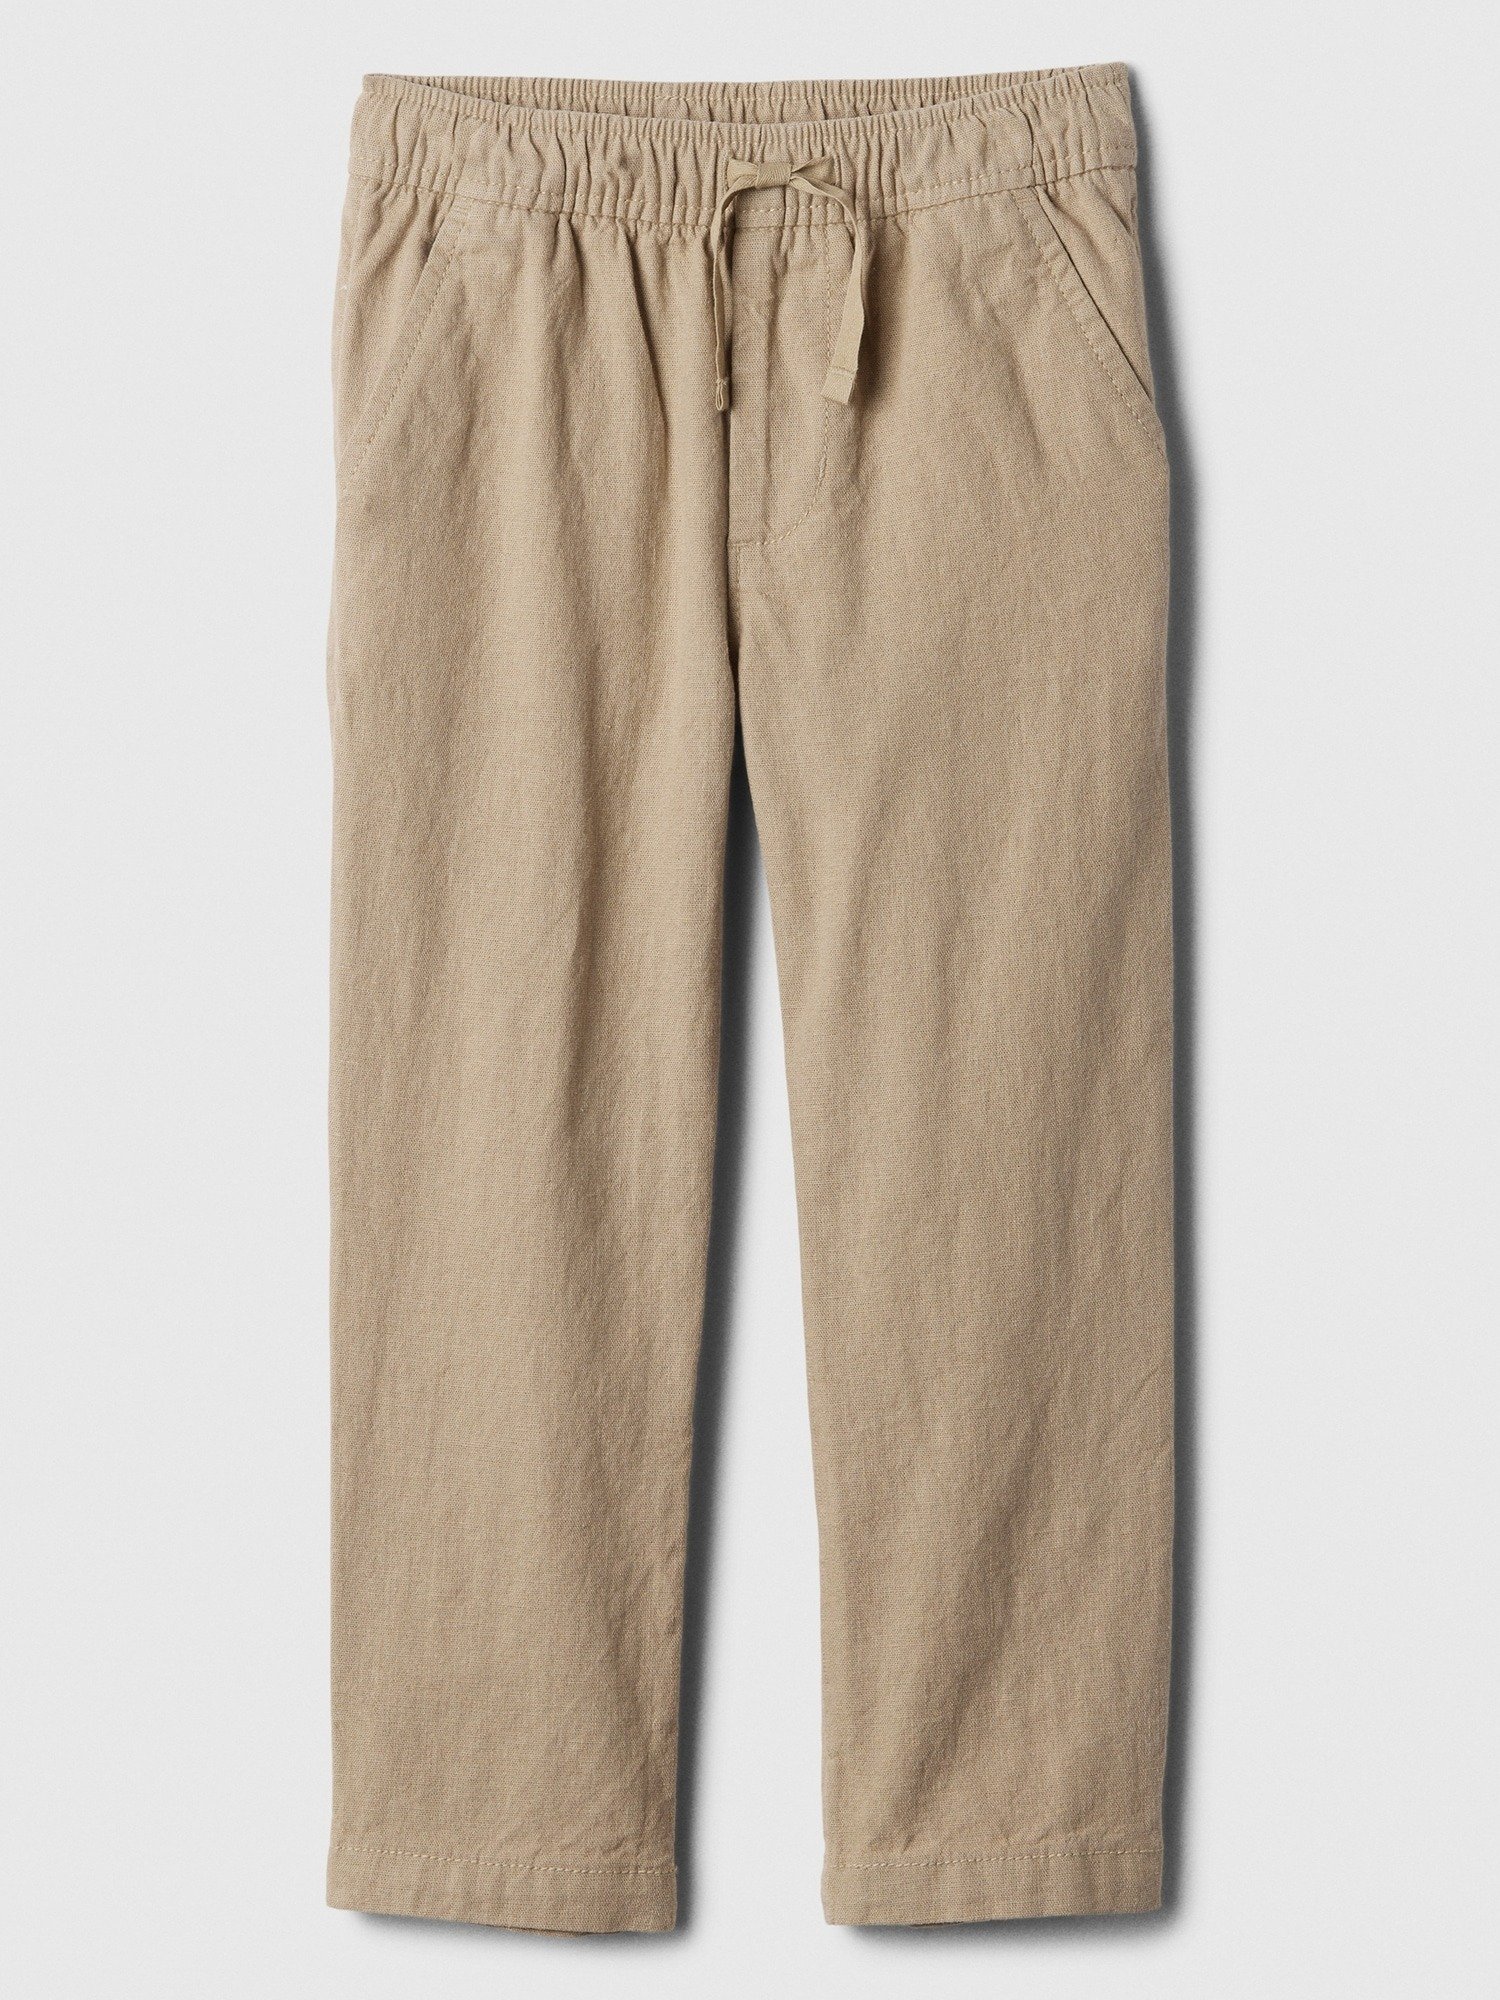 Keten Karışımlı Tapered Pull-On Pantolon product image